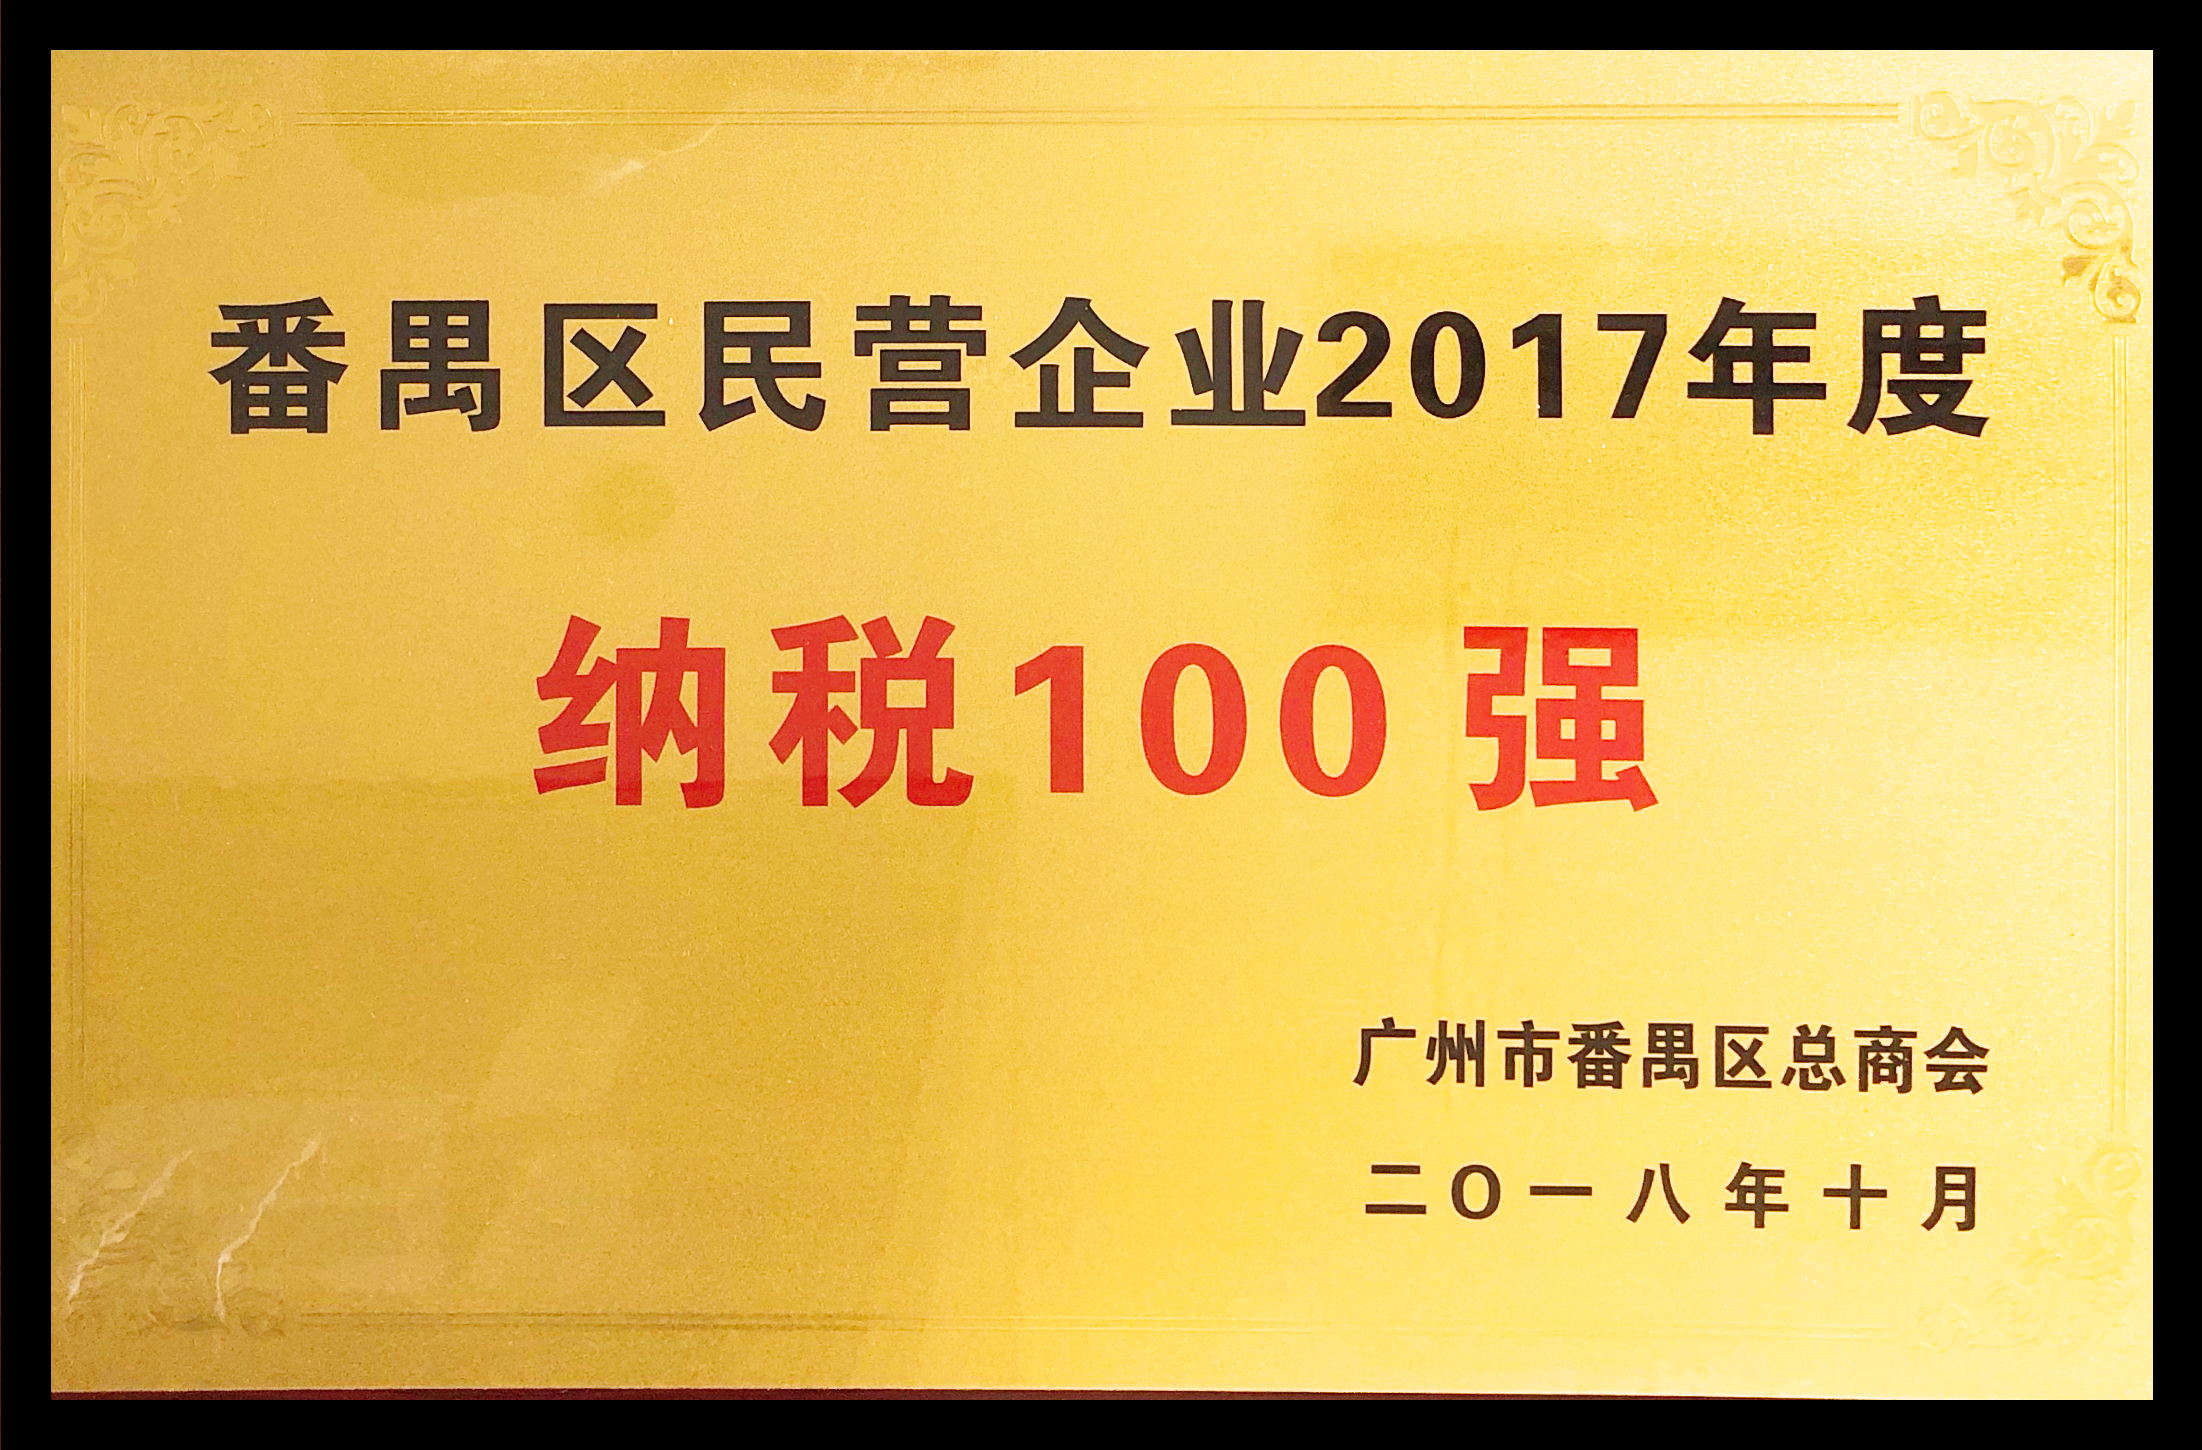 番禺區民營企業2017年度納稅100強